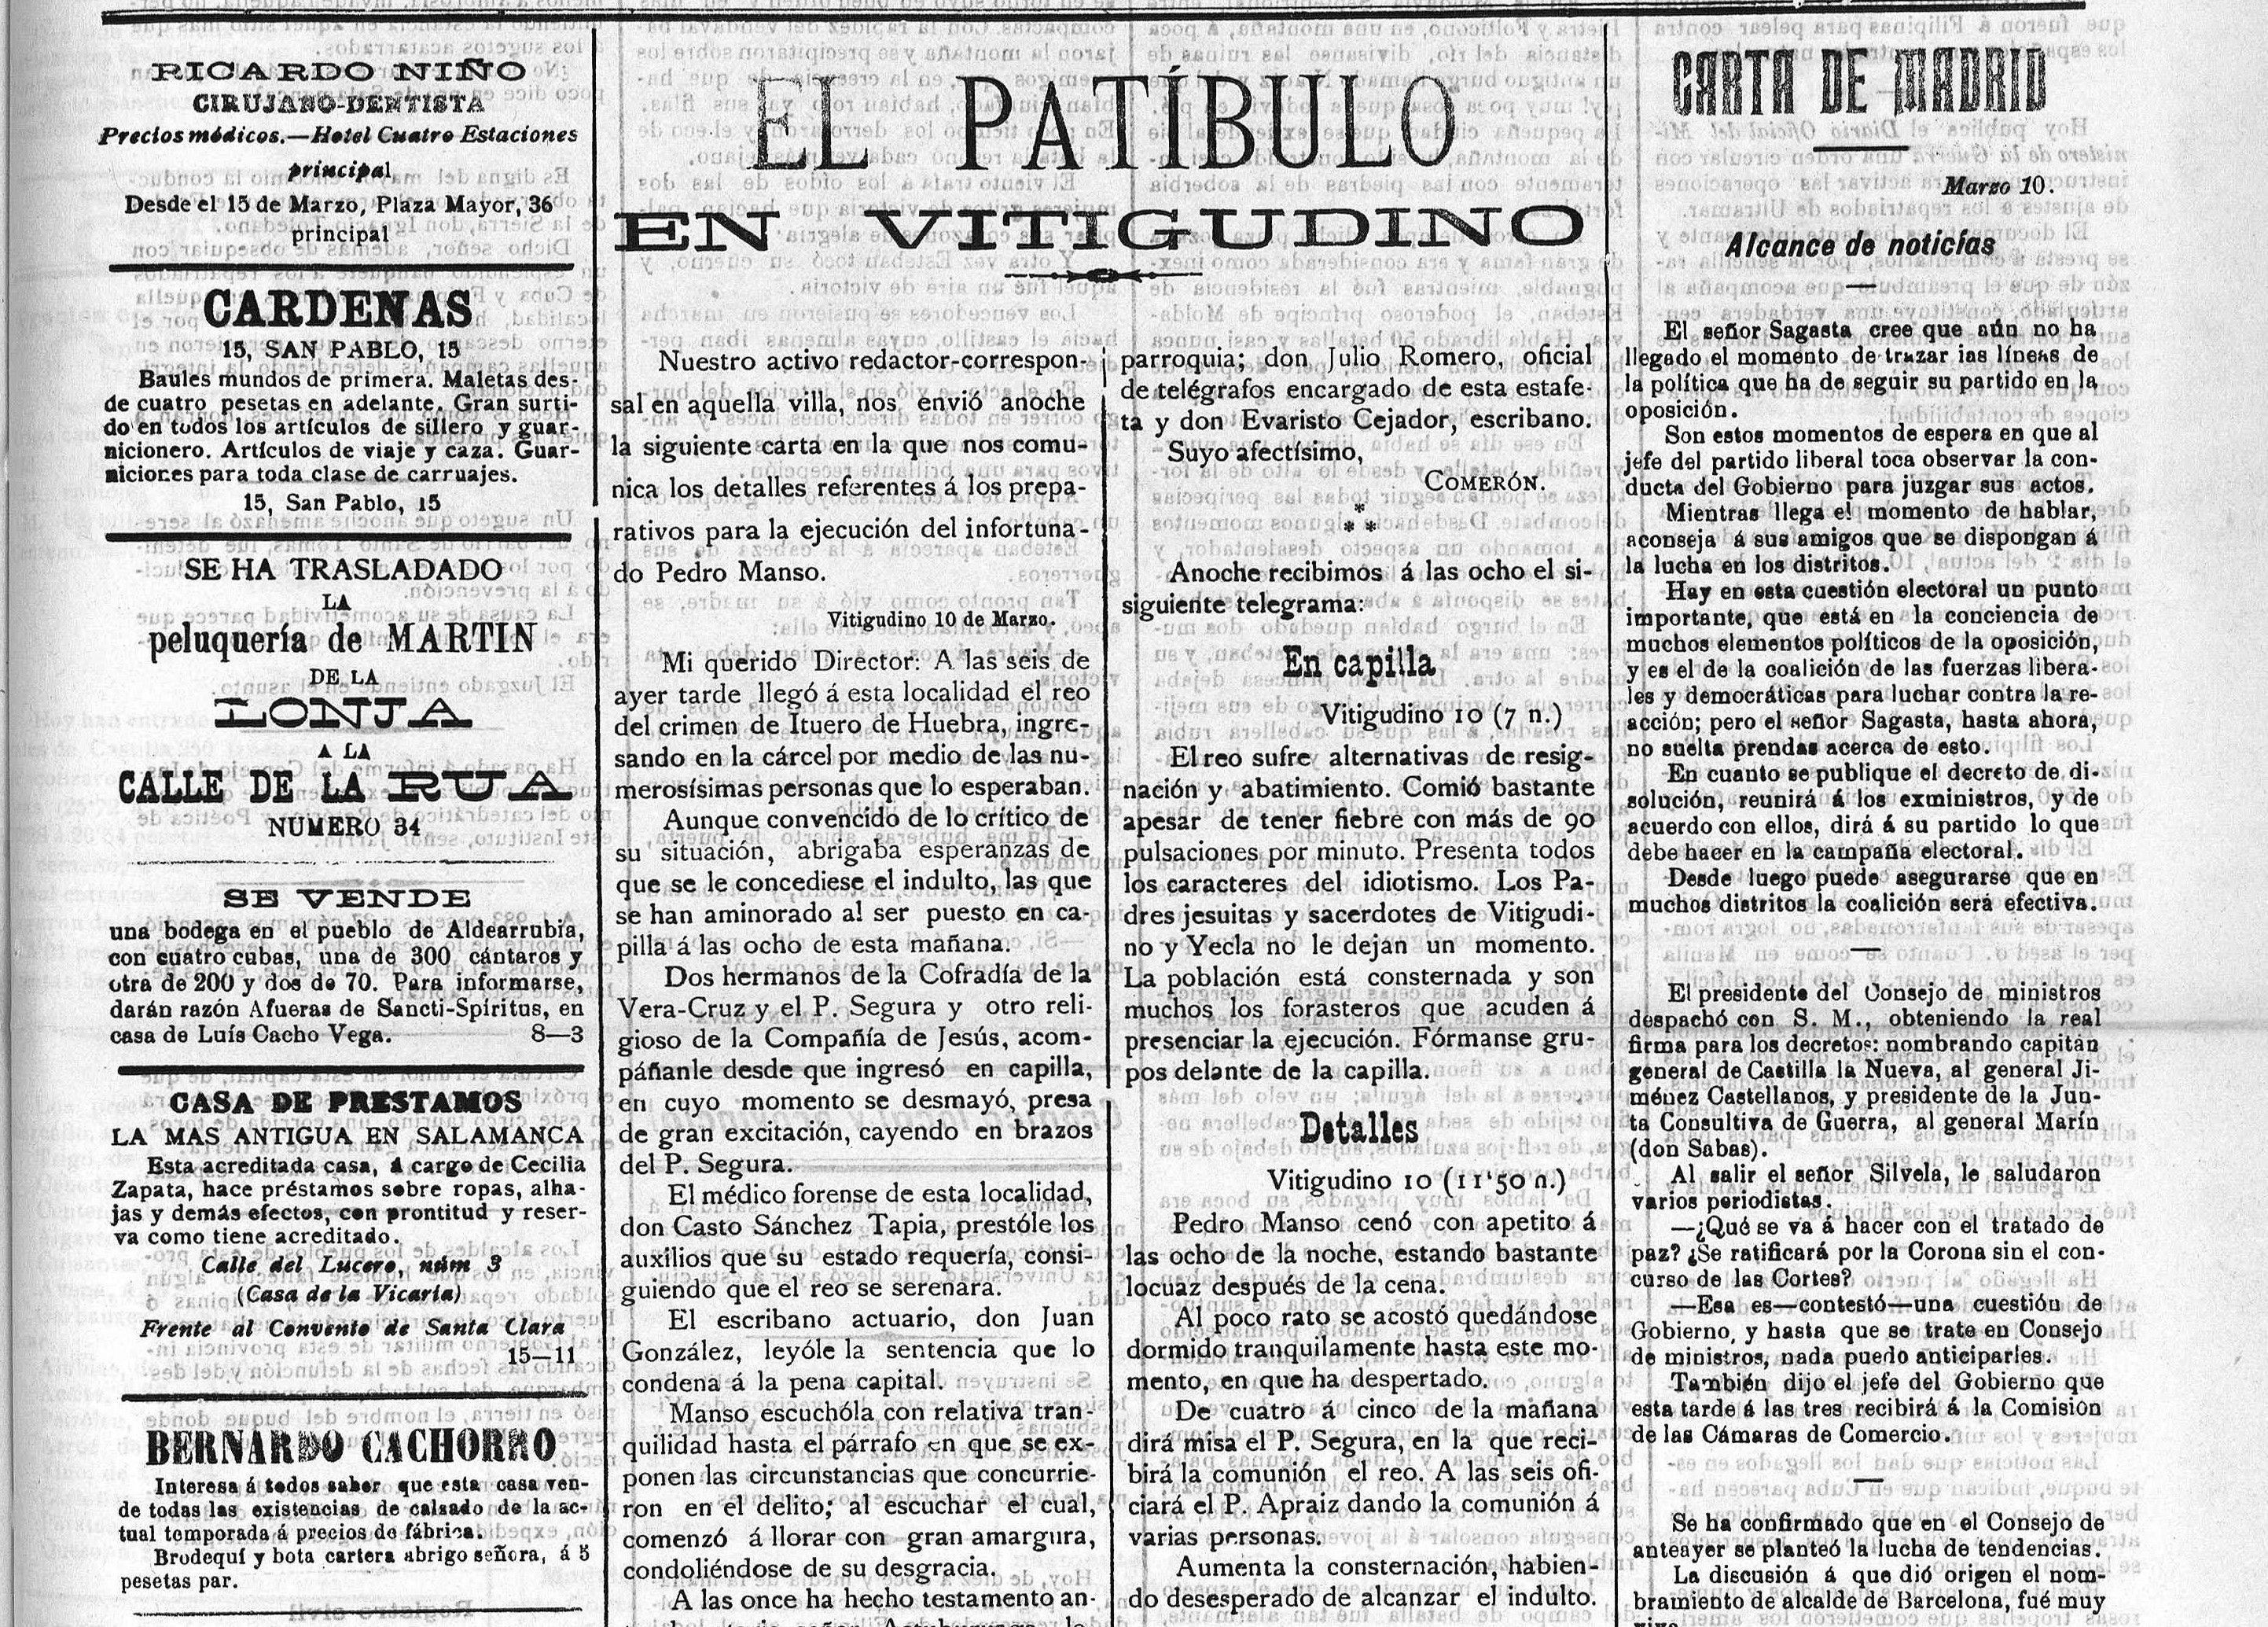 El Patíbulo. El Adelanto, 11 marzo 1899